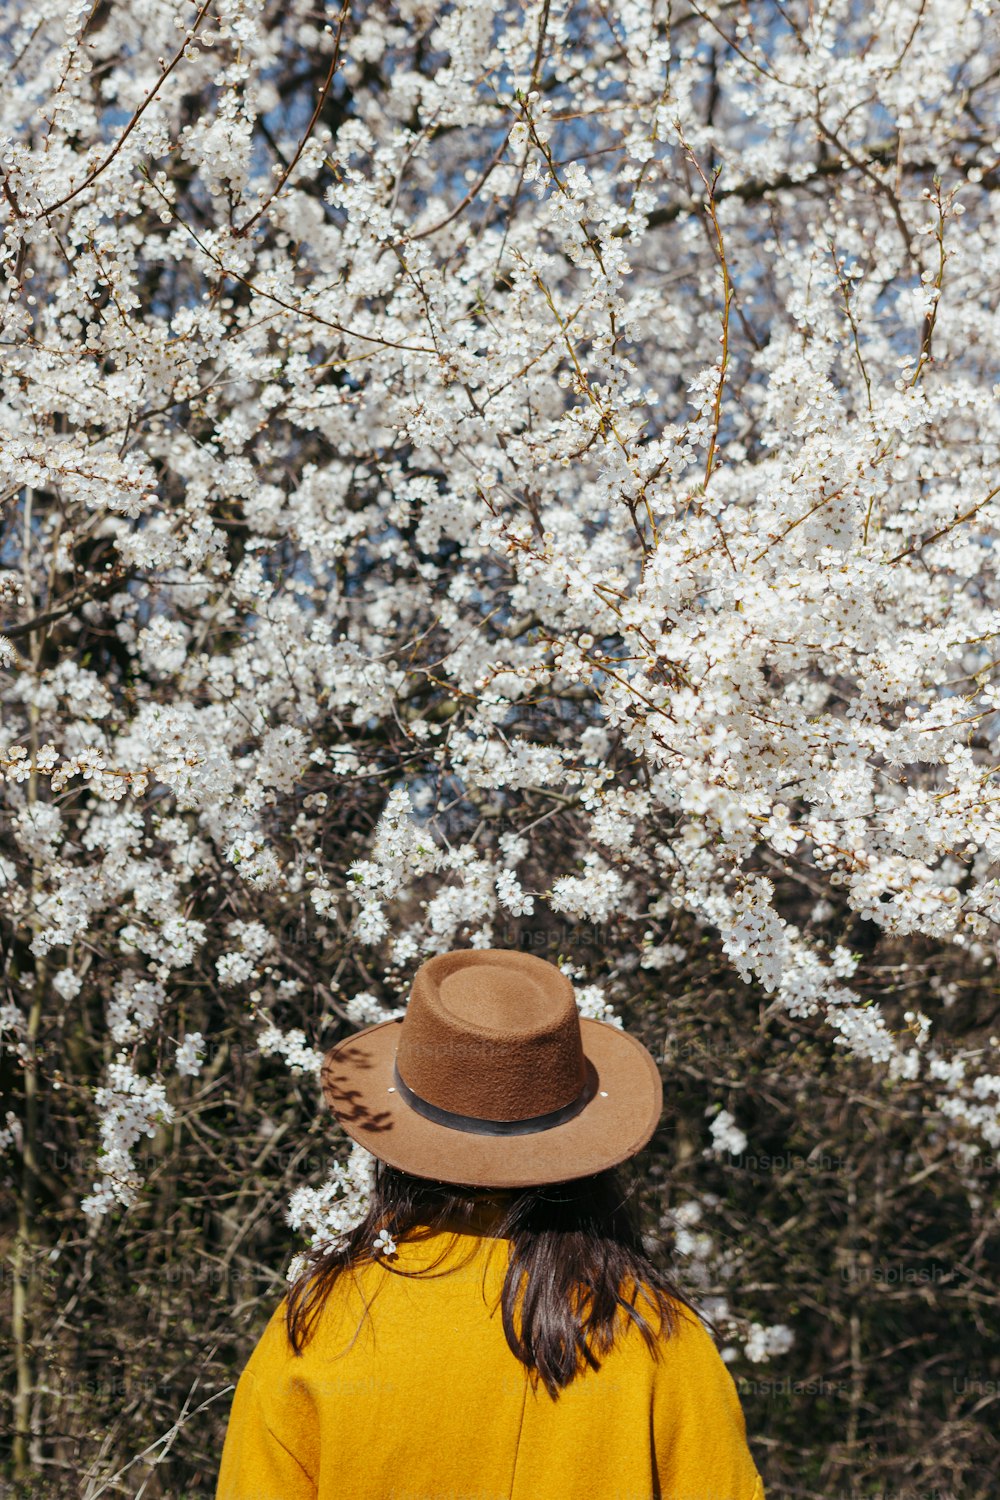 햇살이 내리쬐는 봄날, 뒷모습에 피는 벚나무 가지 사이에서 관능적으로 포즈를 취하고 있는 모자를 쓴 세련된 여성. 고요한 고요한 순간. 흰 꽃을 껴안고 있는 노란 재킷을 입은 세련된 여성